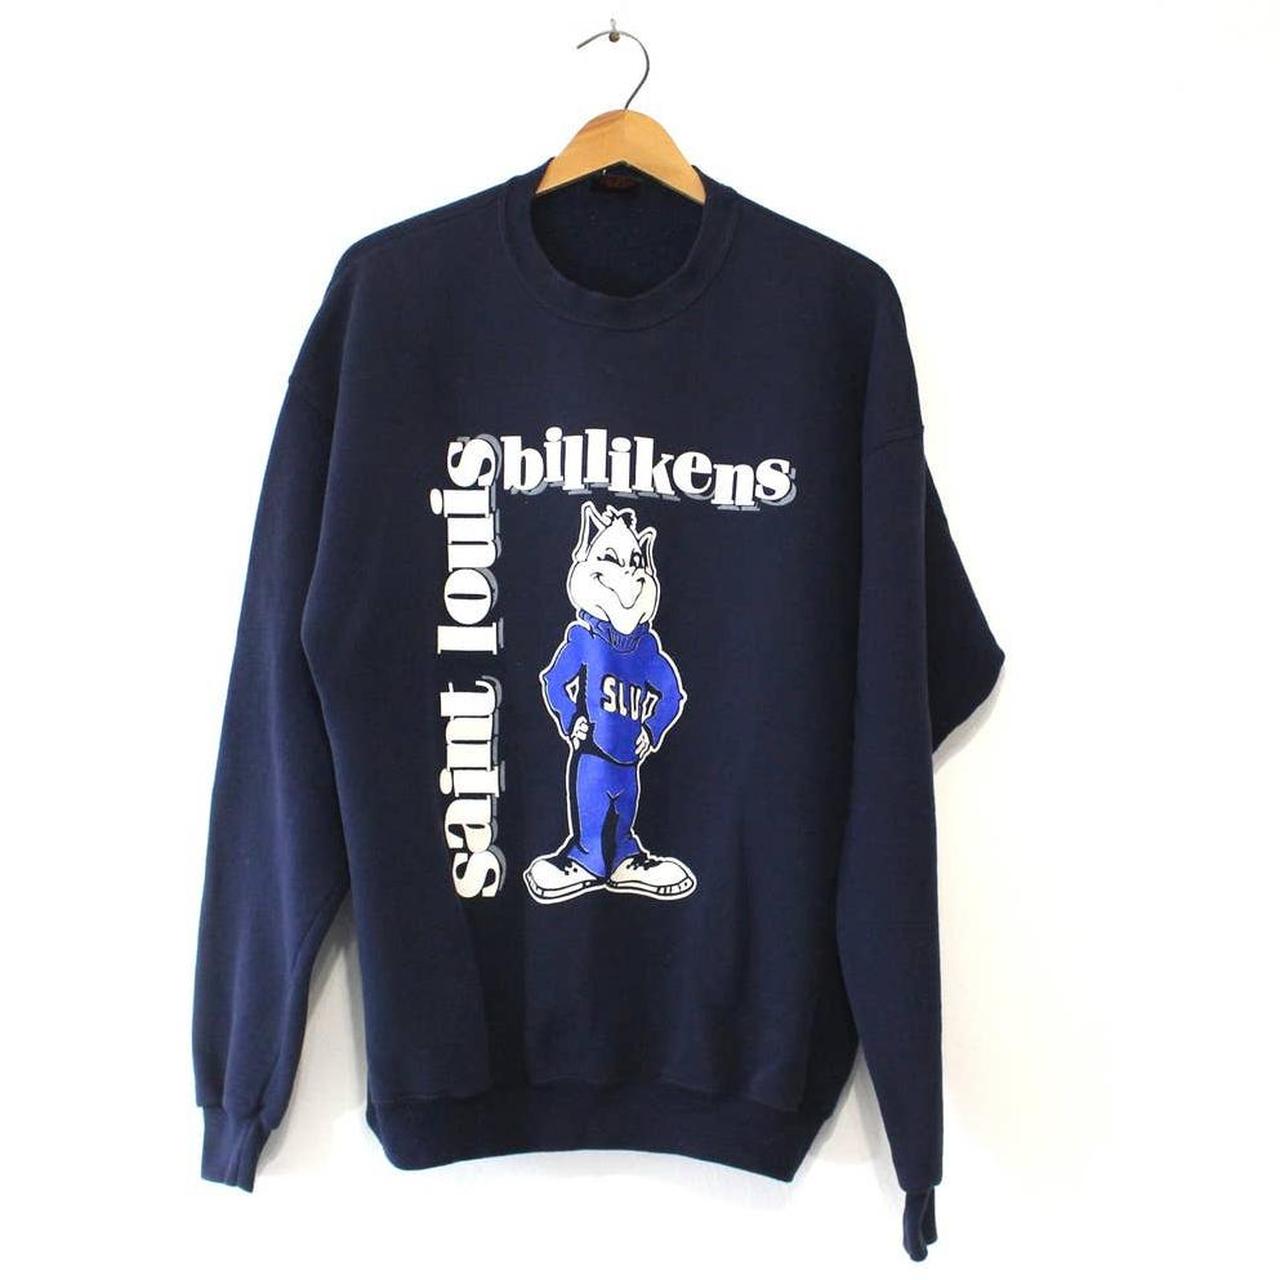 Vintage St. Louis university sweatshirt // - Depop